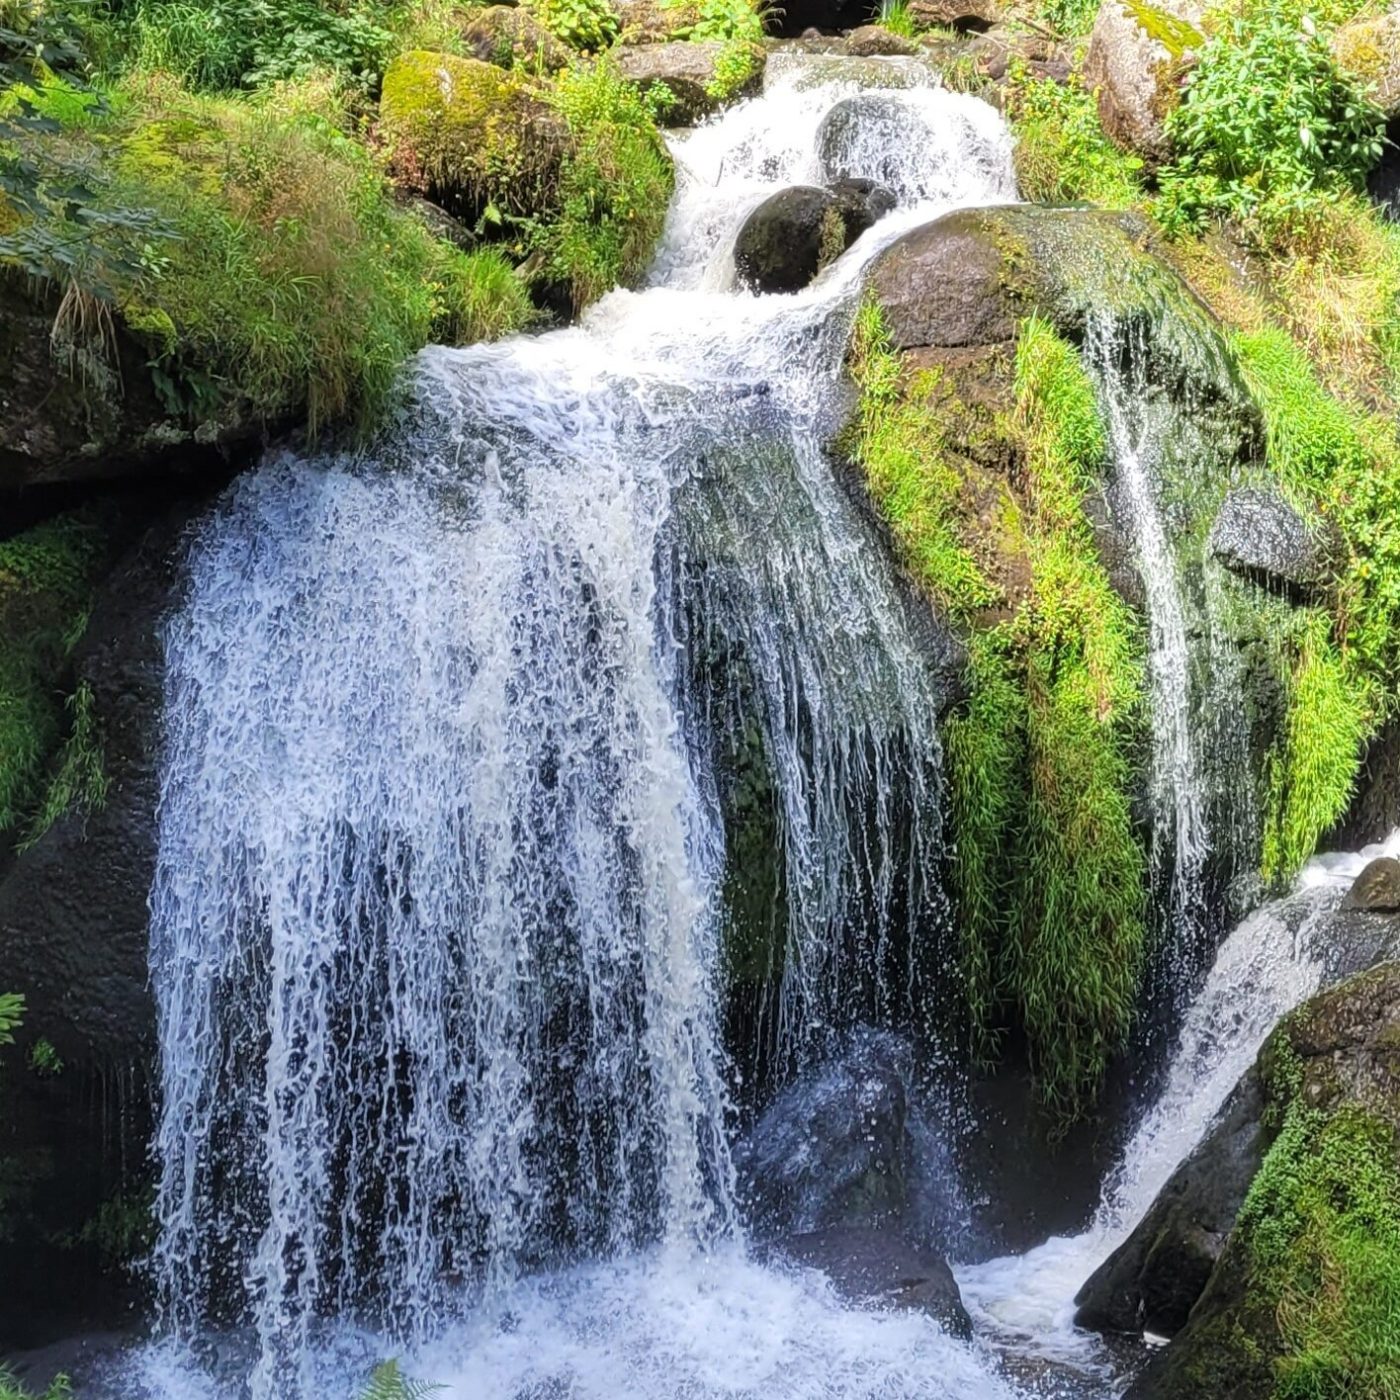 Wasserfall als symbolisches Bild für schamanisches Reisen